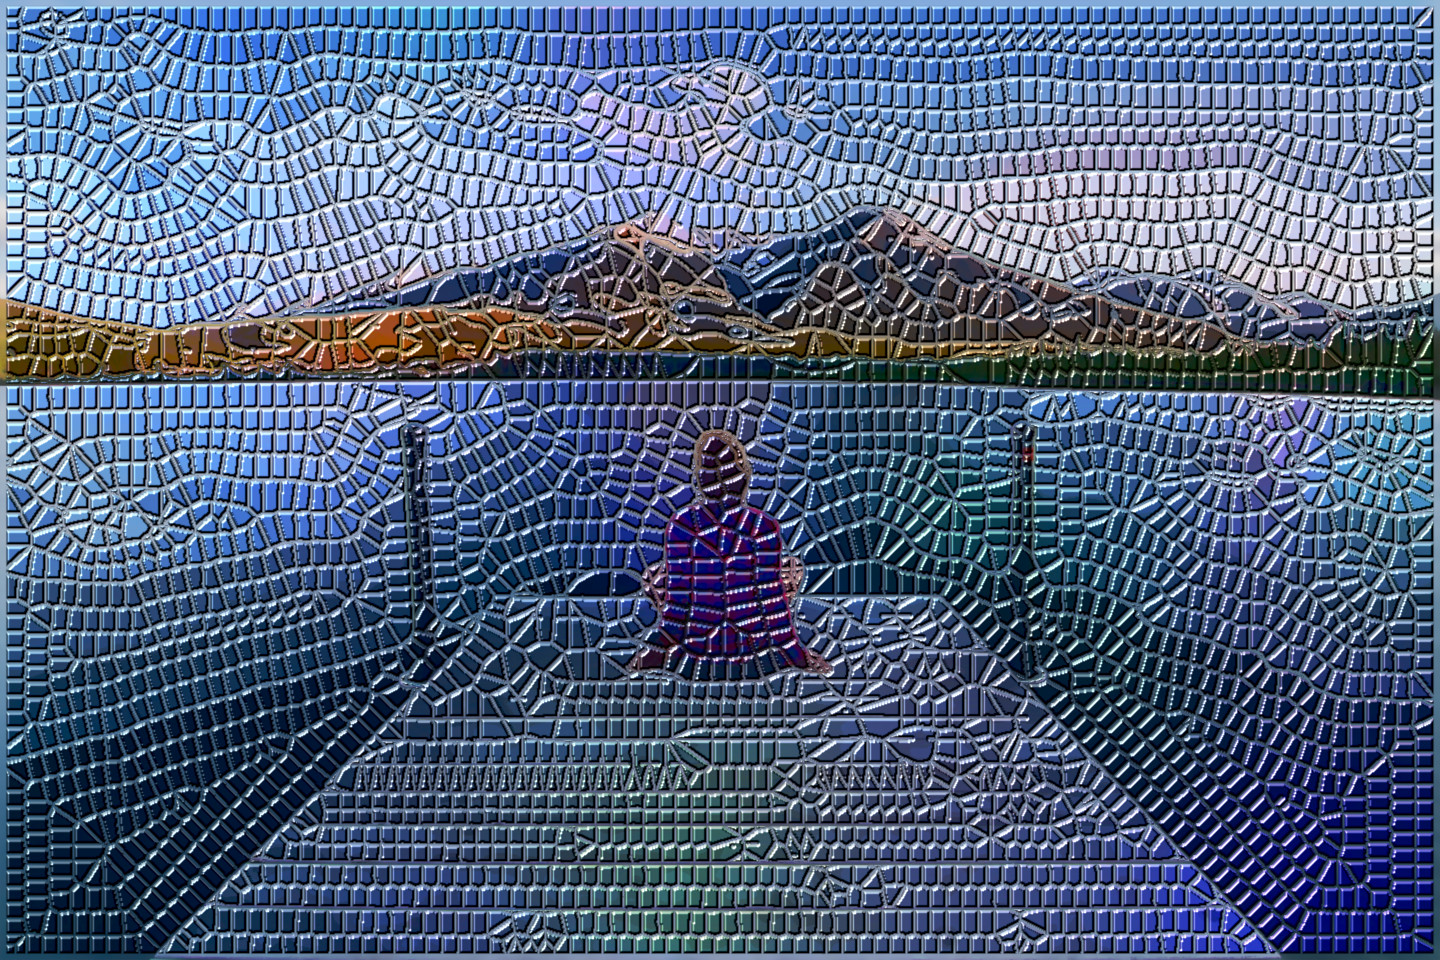 2023-09-15 05-15-39 jetty-1834801_1920, as a Roman Mosaic  (parms=12,1,1,5,3,0,0,1).jpeg